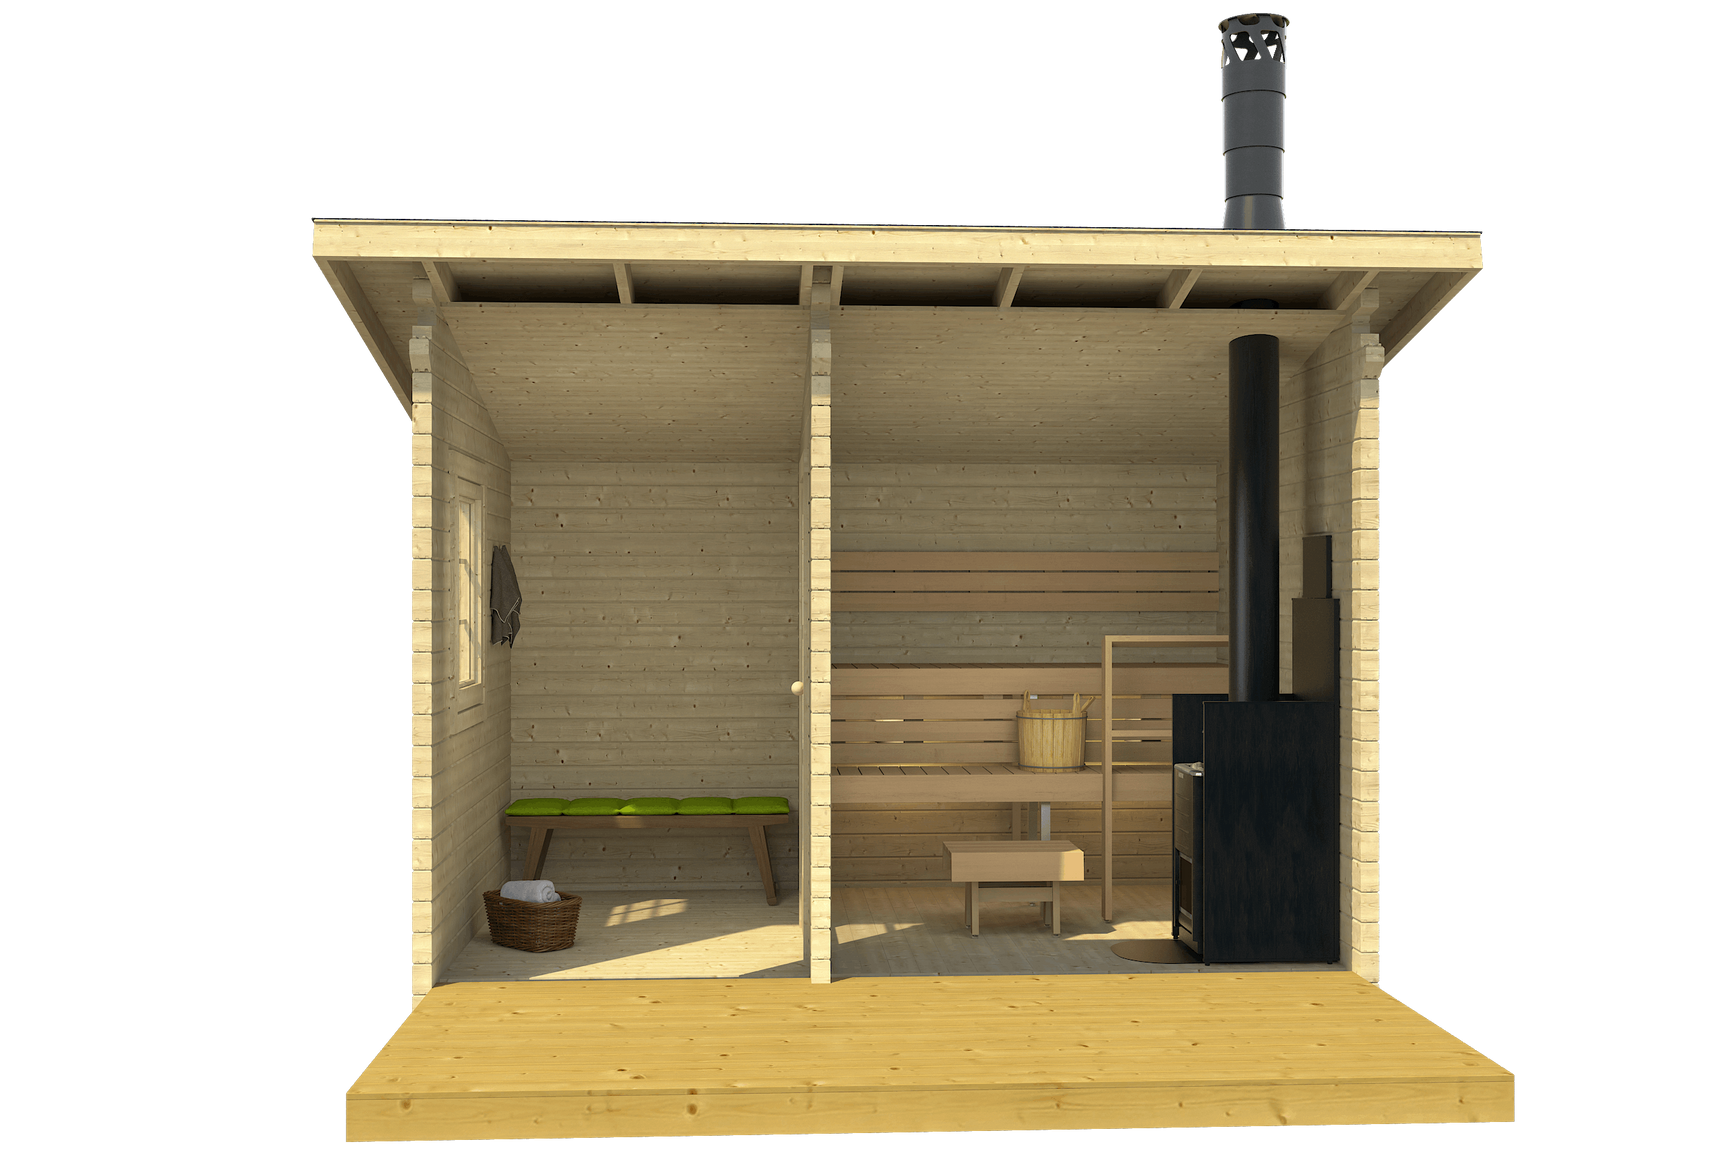 MODERNI PIHASAUNA 12 3.8x2.4m Sauna Log Cabin Front Internal